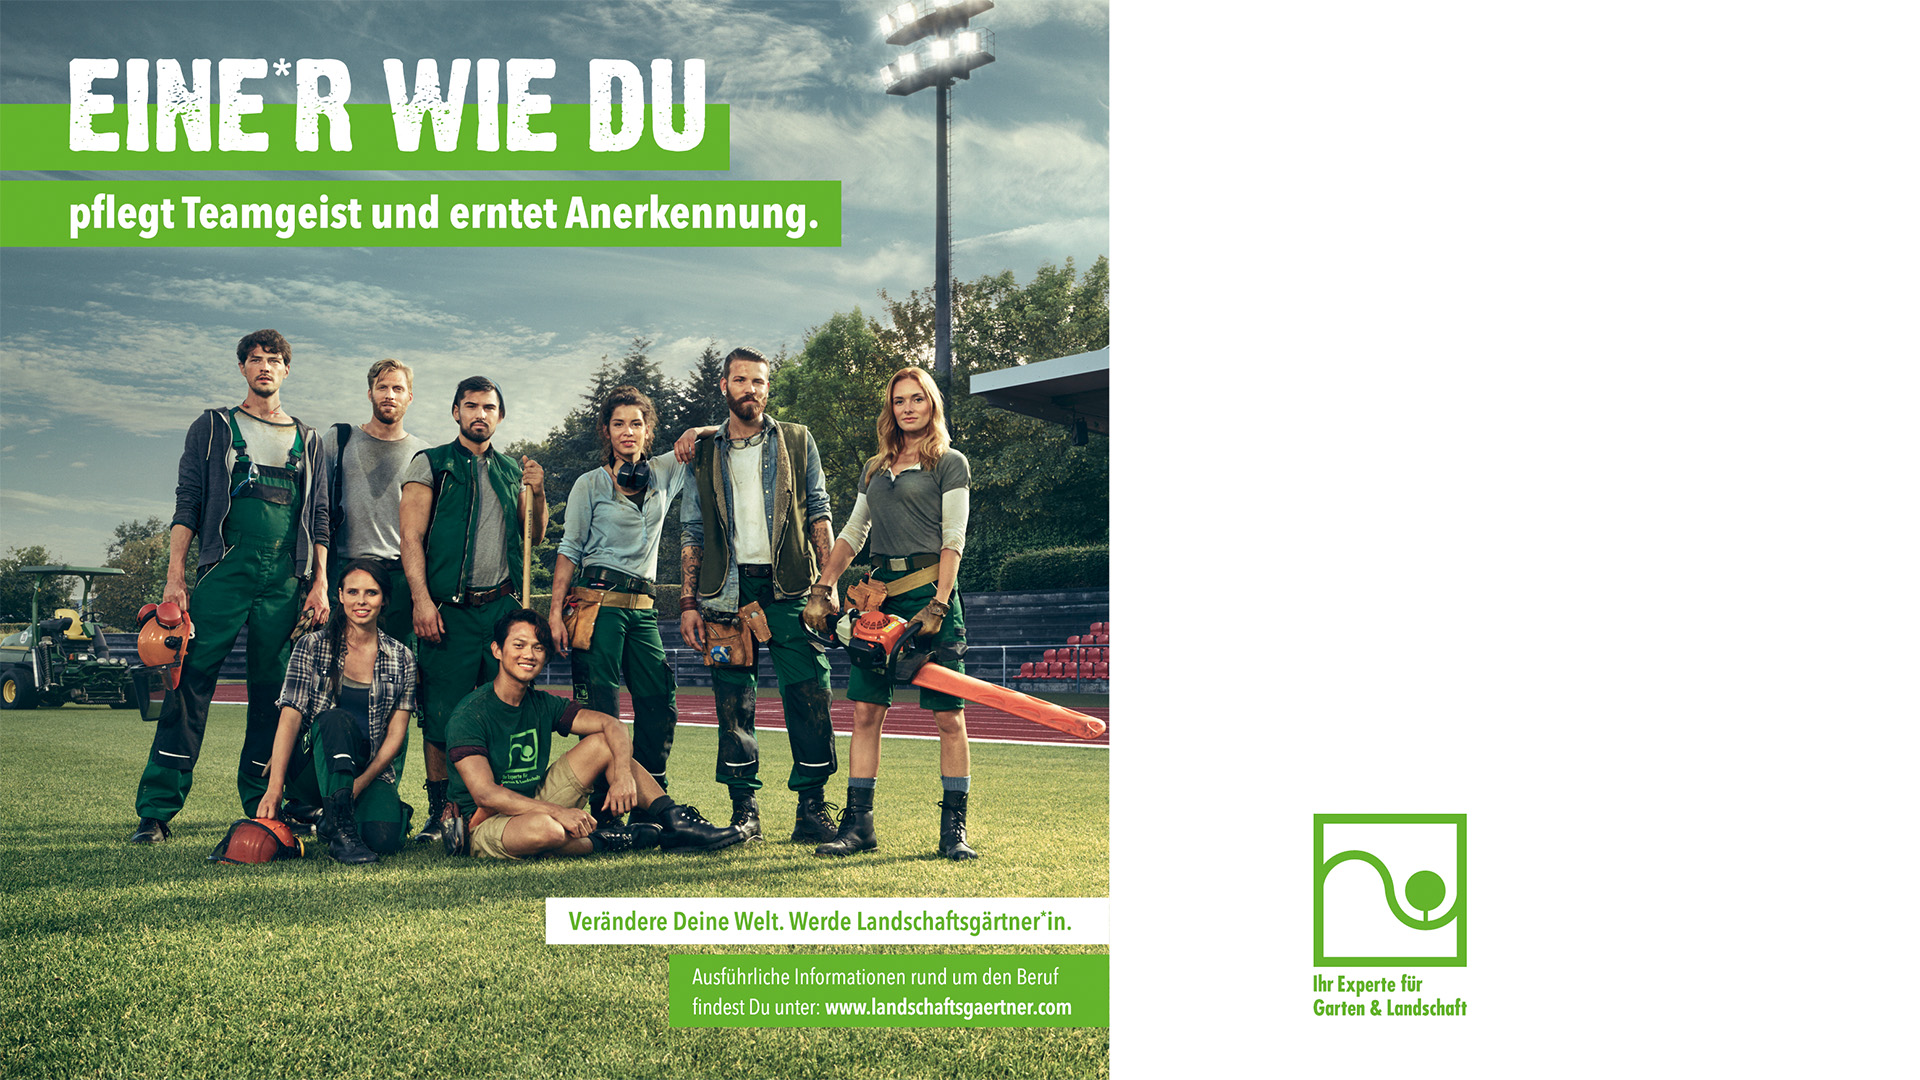 Landschaftsgärtner*in Nachwuchswerbung Kampagnen Motiv Team: Eine*r wie du pflegt Teamgeist und erntet Anerkennung.